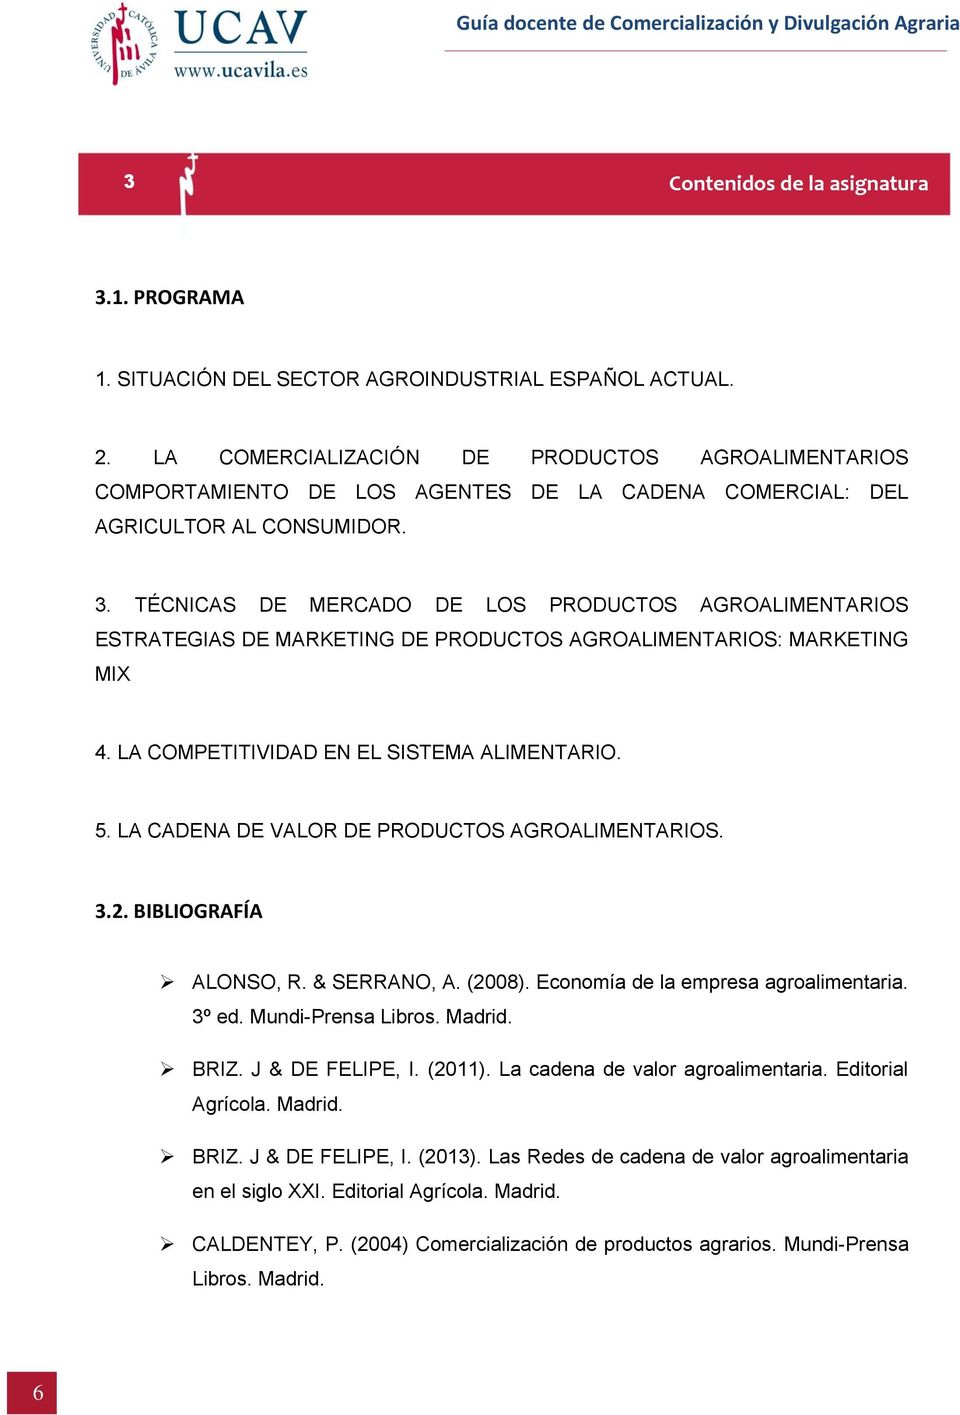 TÉCNICAS DE MERCADO DE LOS PRODUCTOS AGROALIMENTARIOS ESTRATEGIAS DE MARKETING DE PRODUCTOS AGROALIMENTARIOS: MARKETING MIX 4. LA COMPETITIVIDAD EN EL SISTEMA ALIMENTARIO. 5.